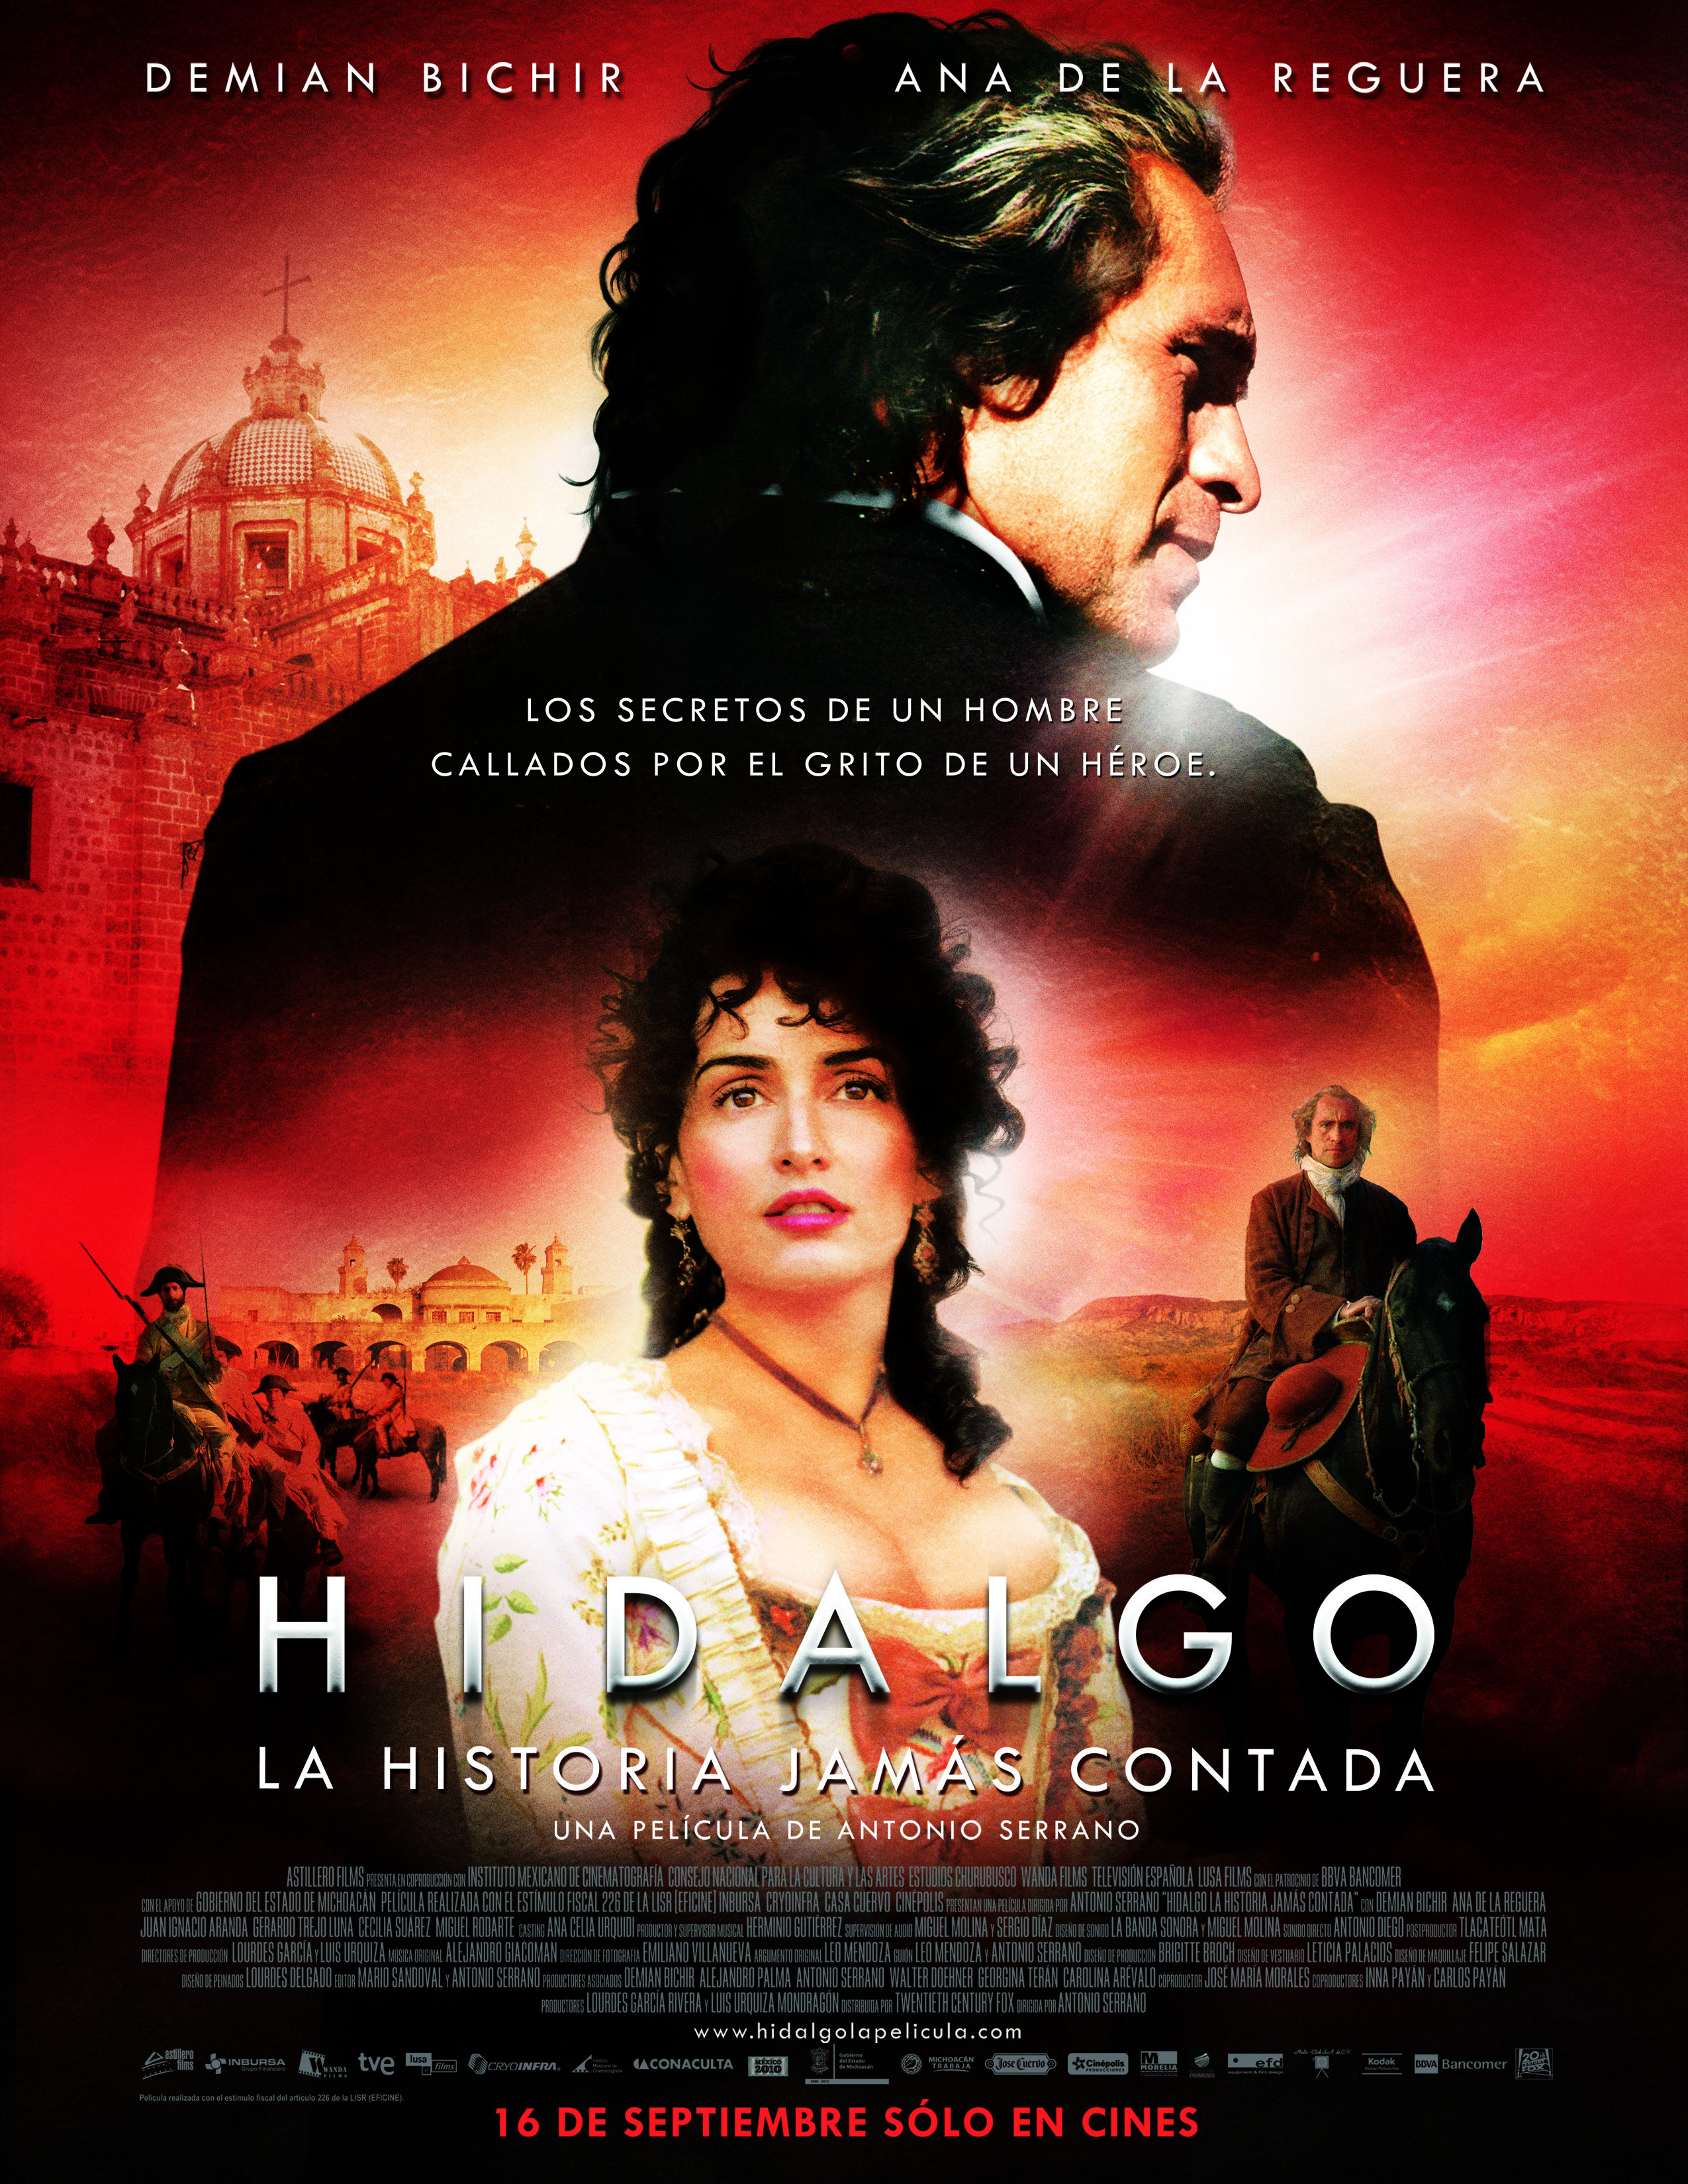 Hidalgo - La Historia Jamás Contada. Main Poster